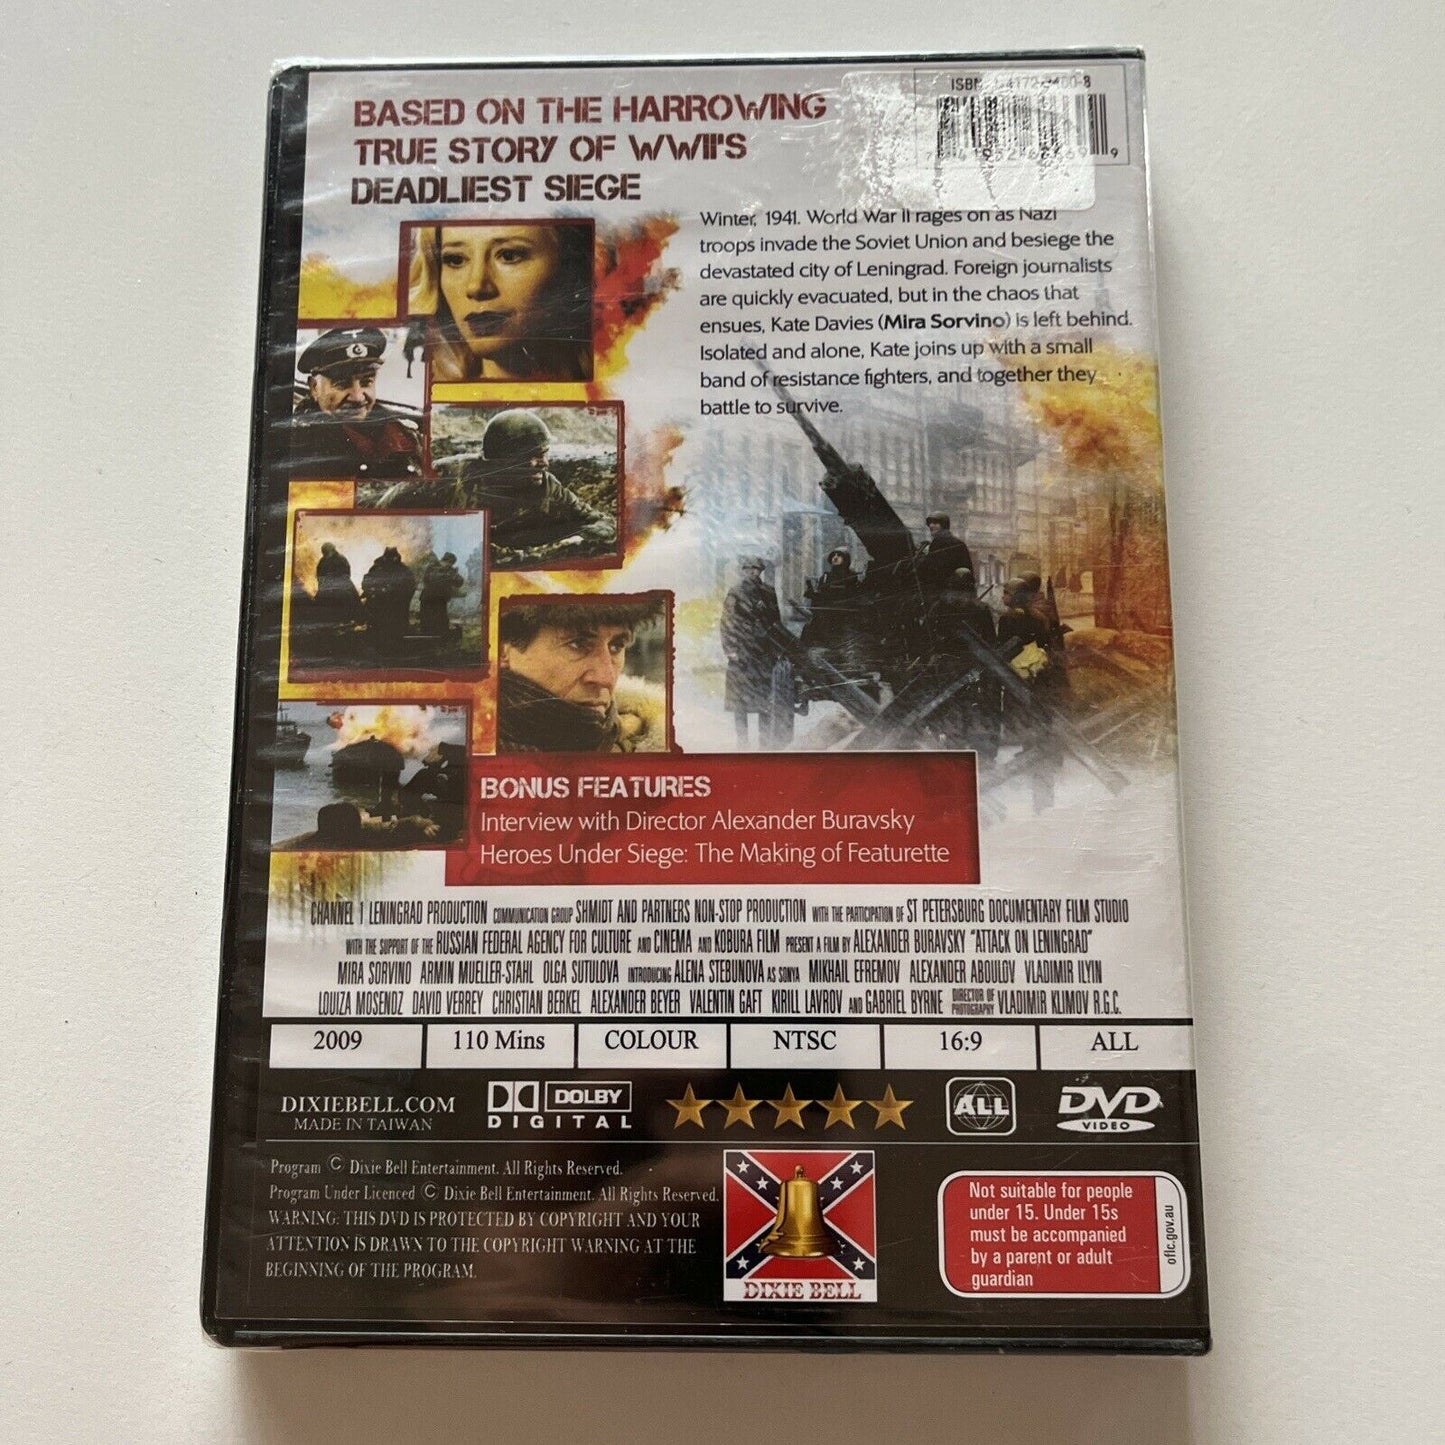 *New Sealed* Attack On Leningrad (DVD, 2009) Mira Sorvino,  All Regions